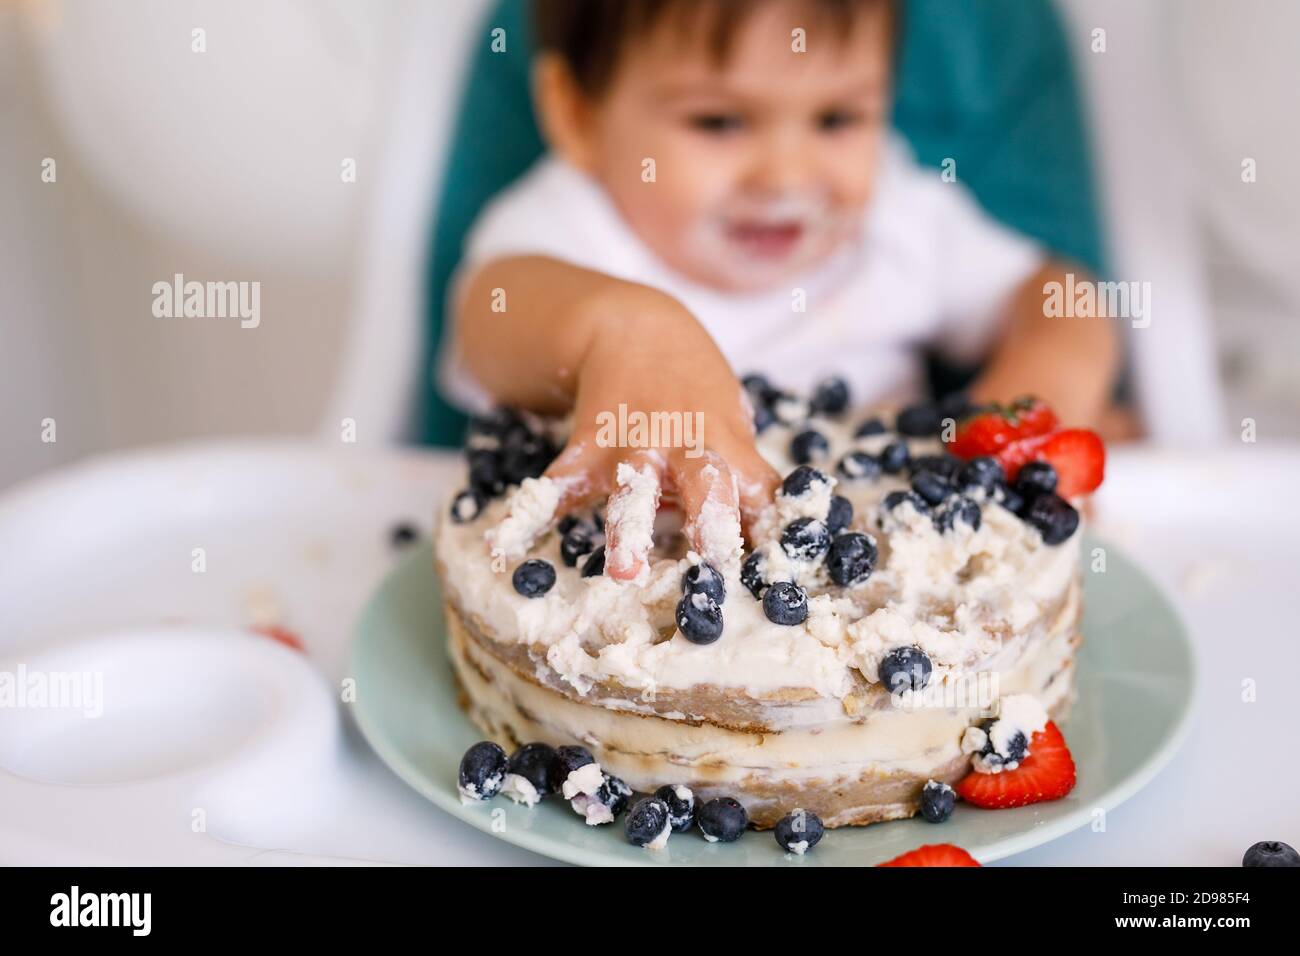 Kleiner Junge, der in einem Hochstuhl in der weißen Küche sitzt Und Verkostung ersten Jahr Kuchen mit Früchten auf Hintergrund mit Ballons Stockfoto